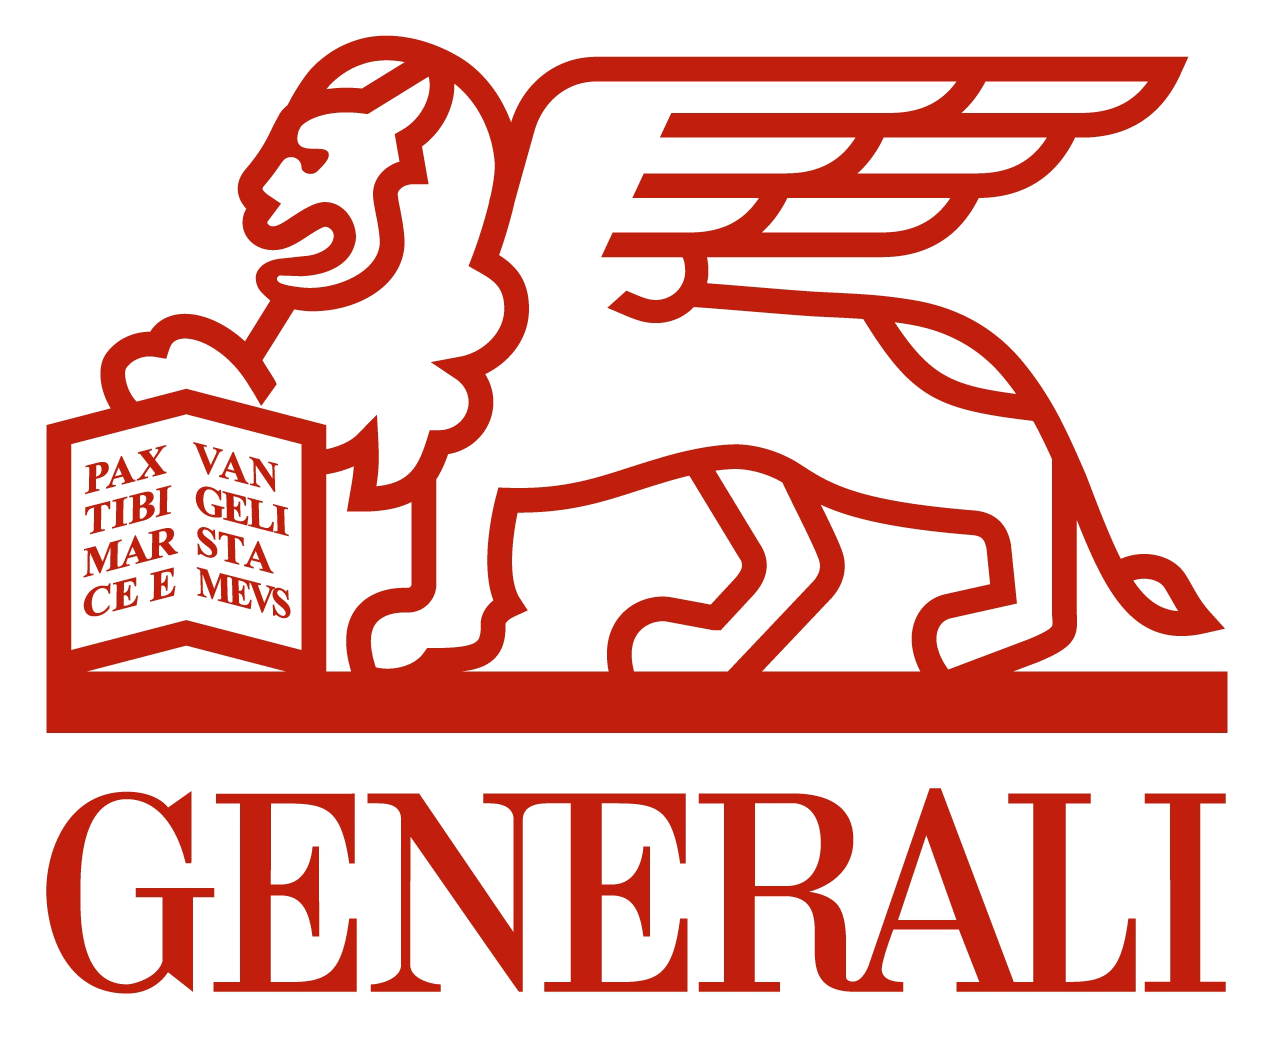 Logo Generali Group